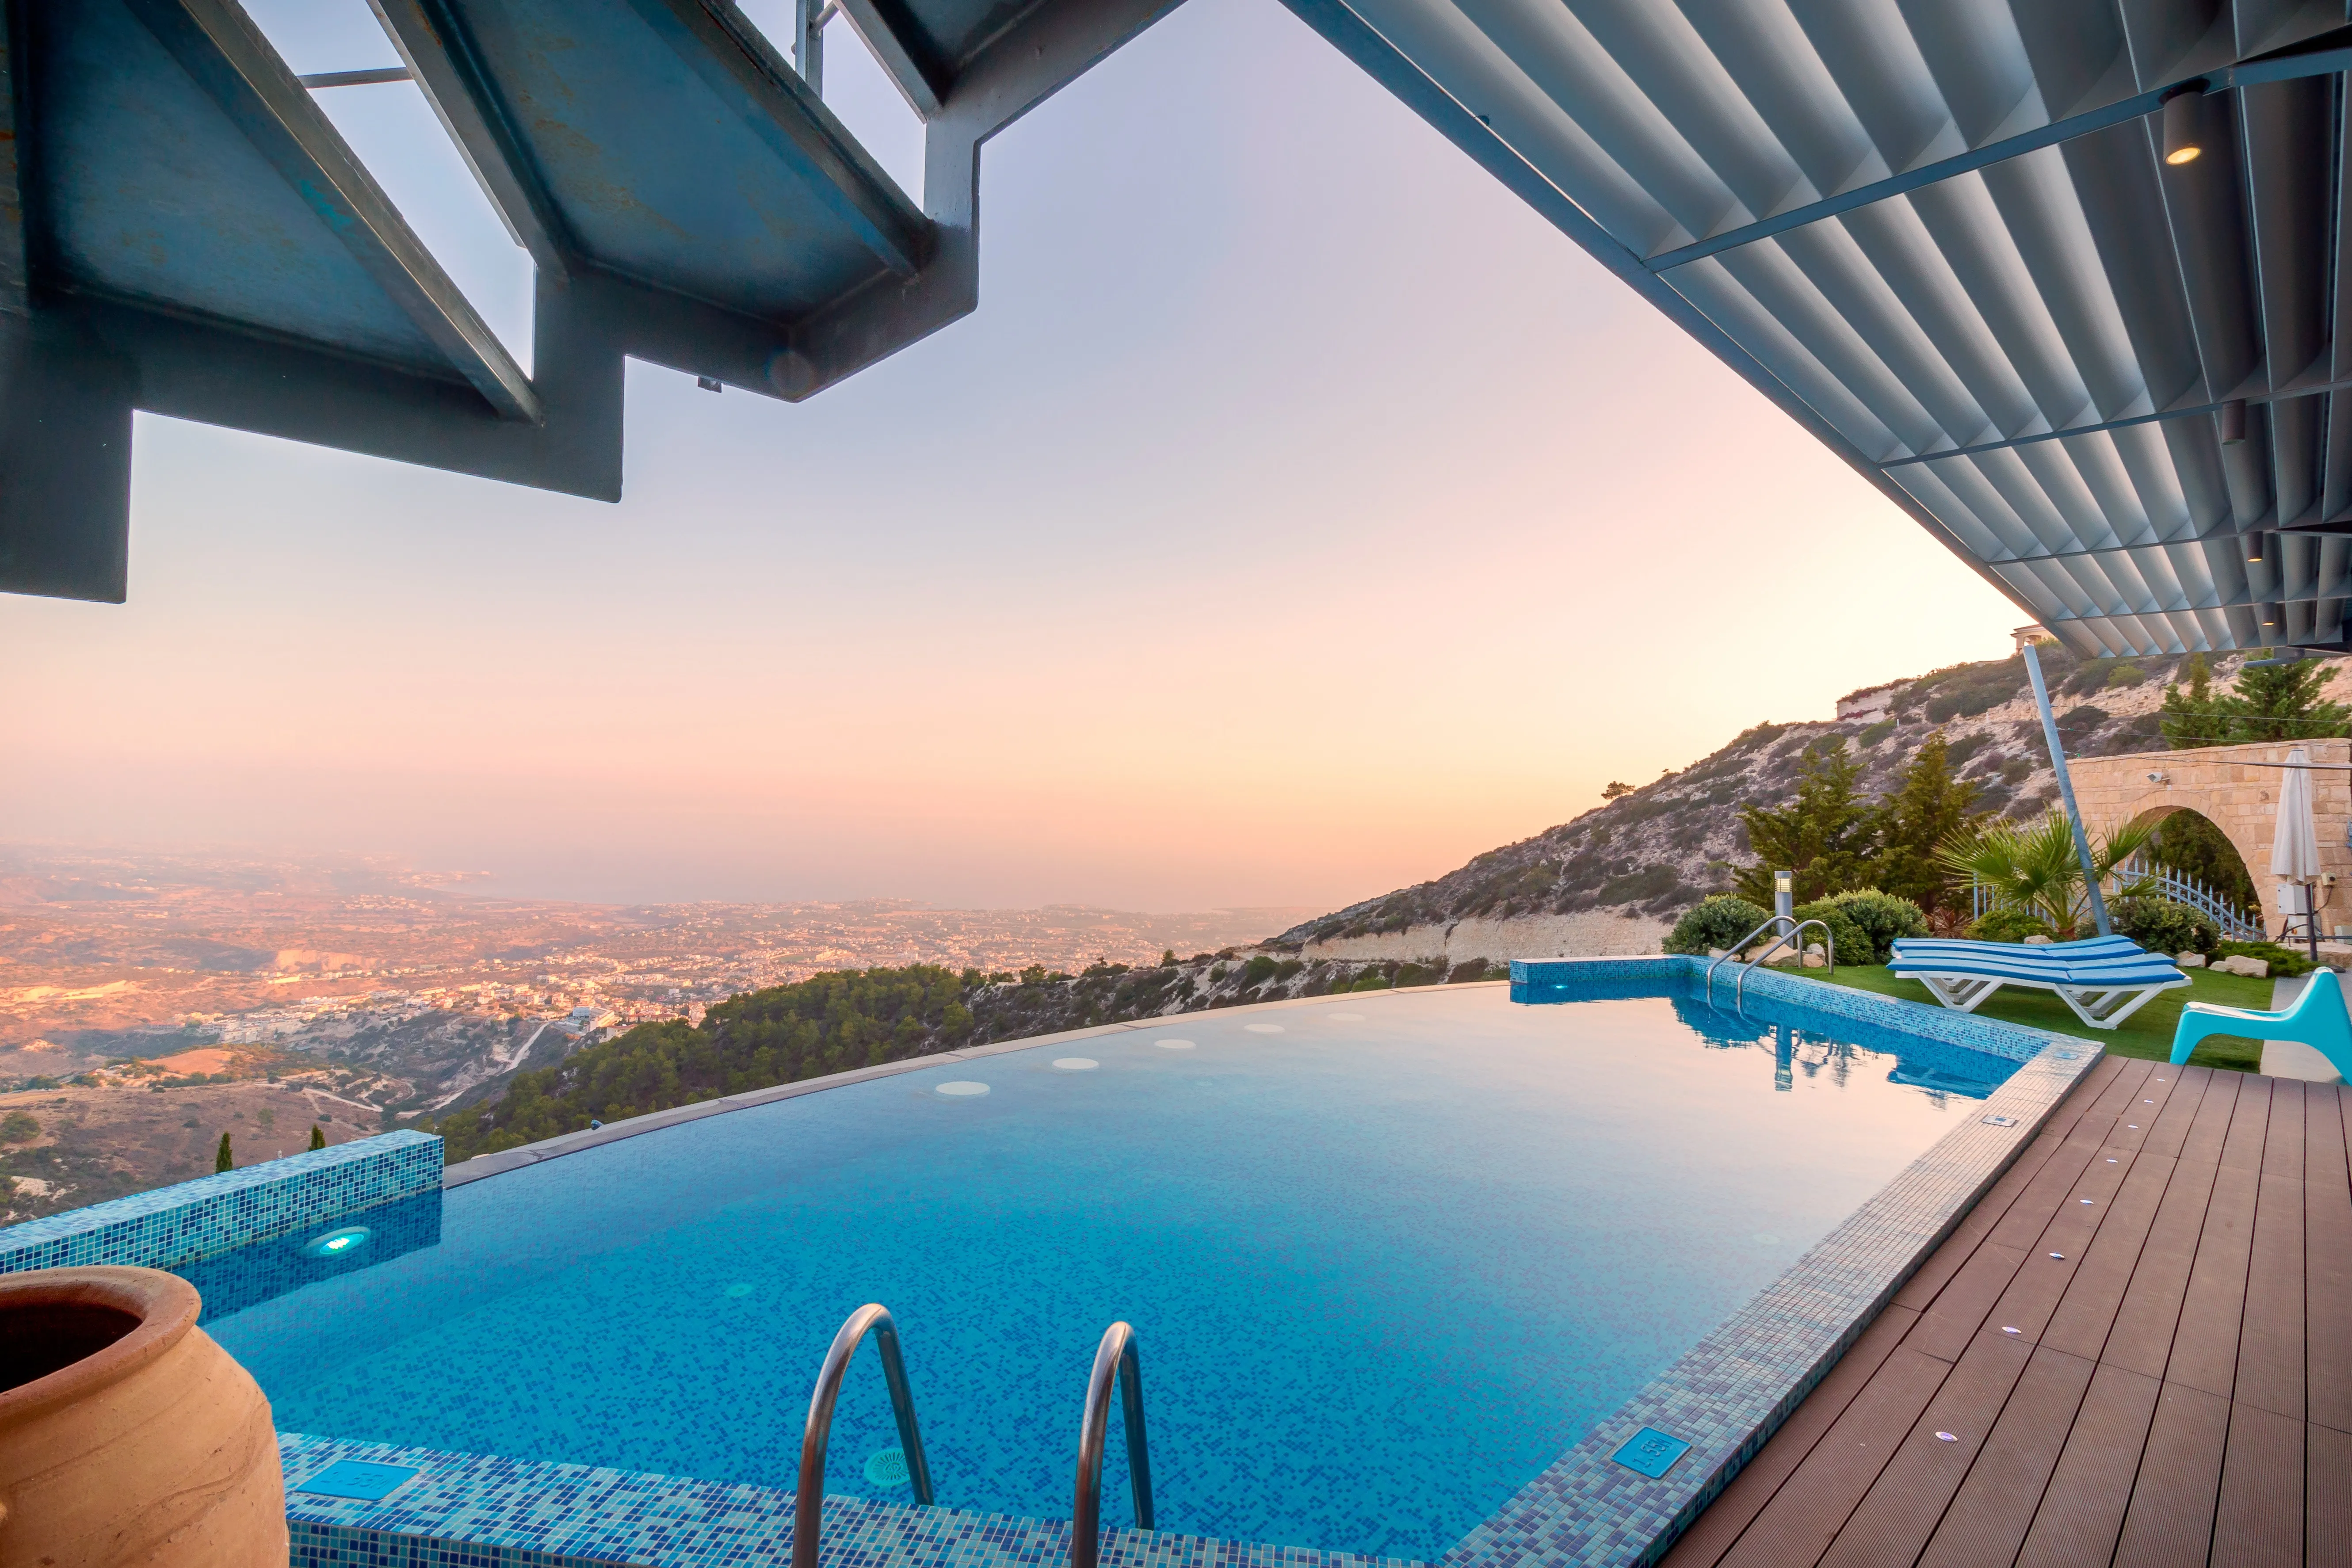 Best Alternatives for Rentaing a Villa in Antalya